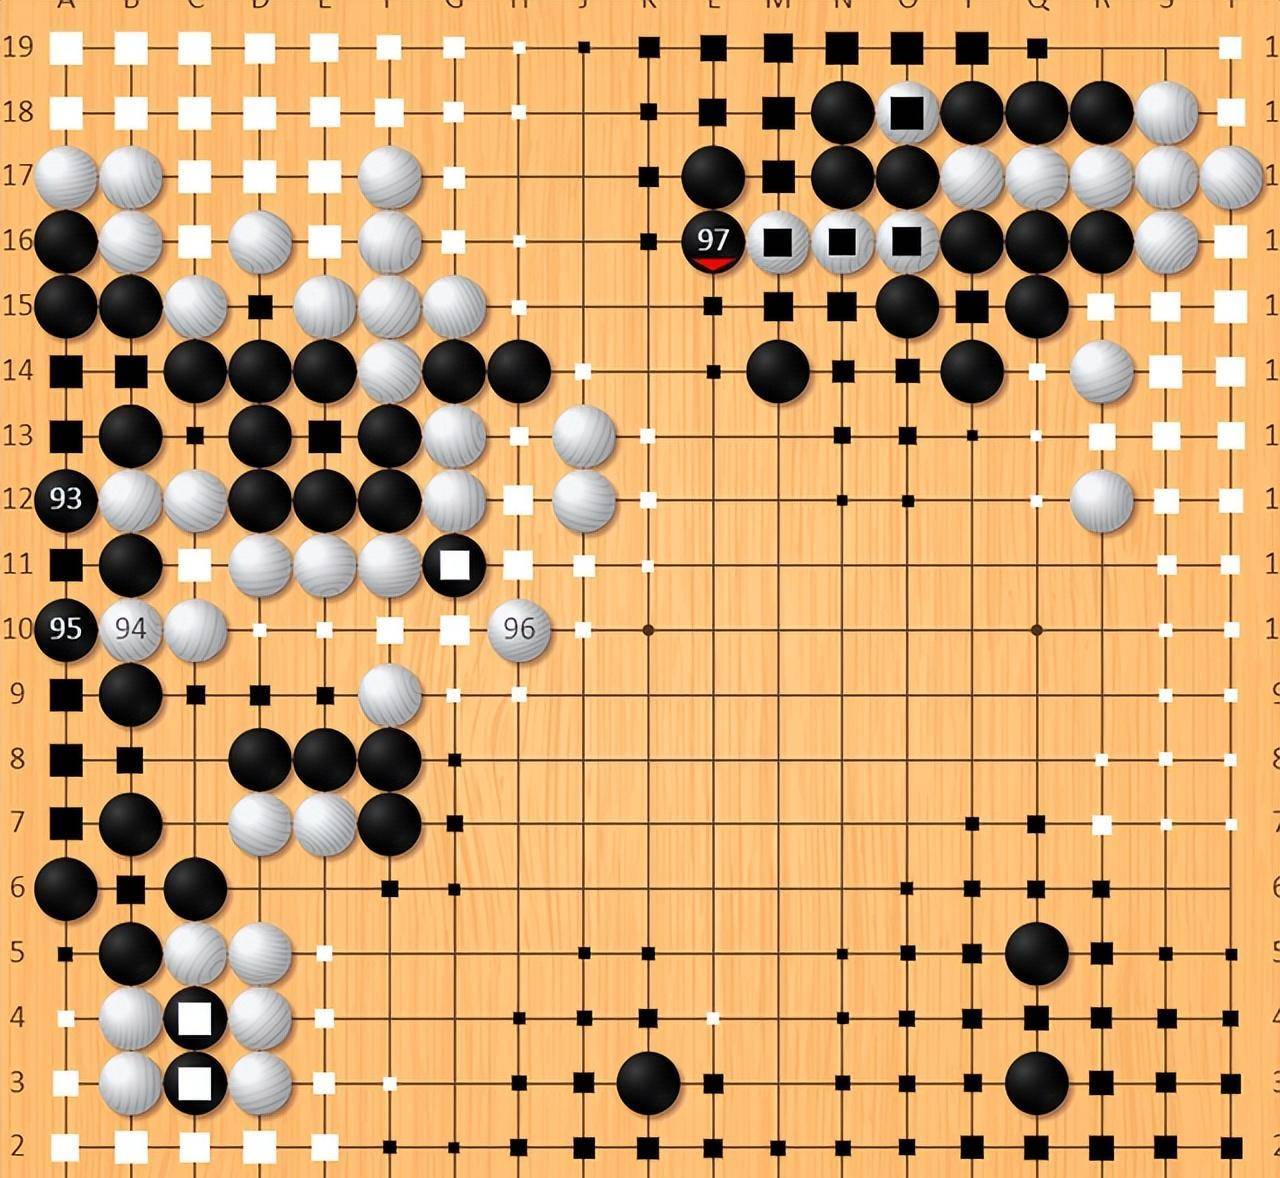 白棋VS黑棋，双人象棋对战再现精彩对决